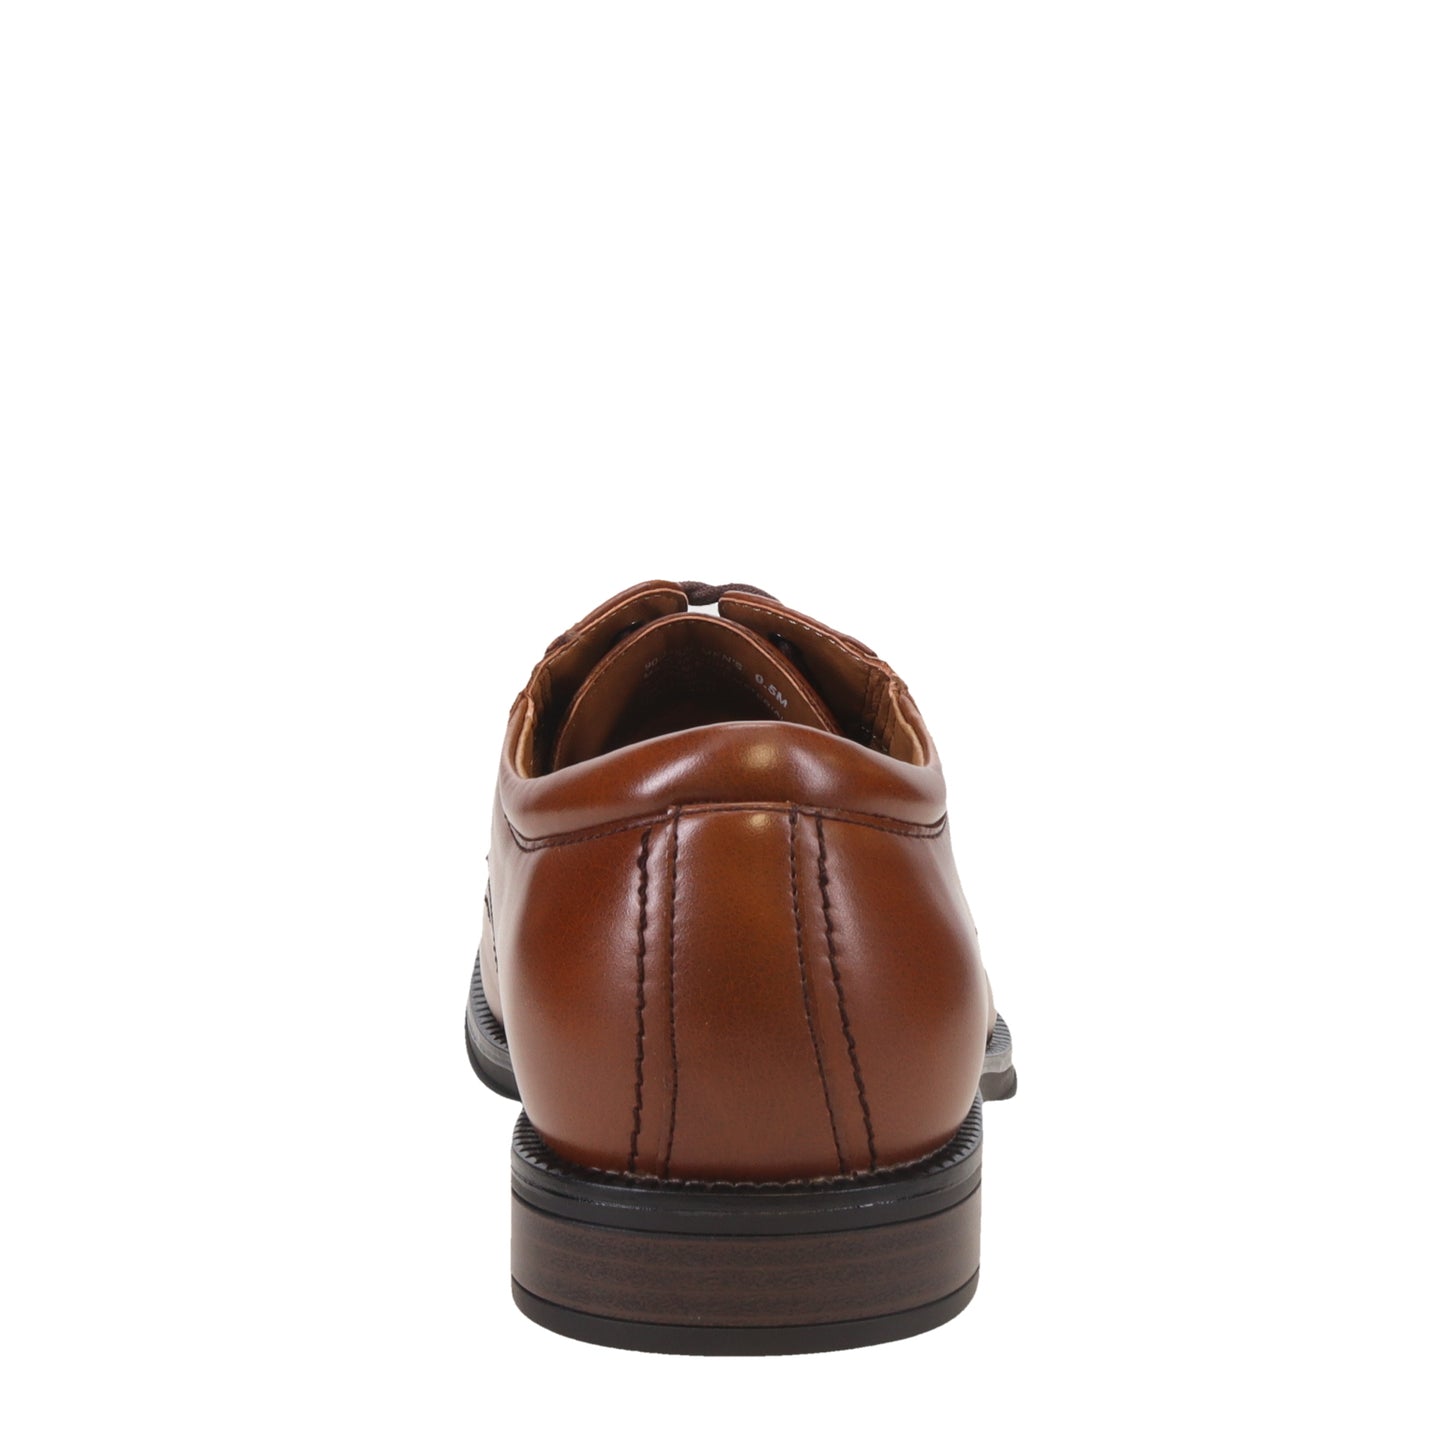 Men's Dockers, Geyer Oxford – Peltz Shoes